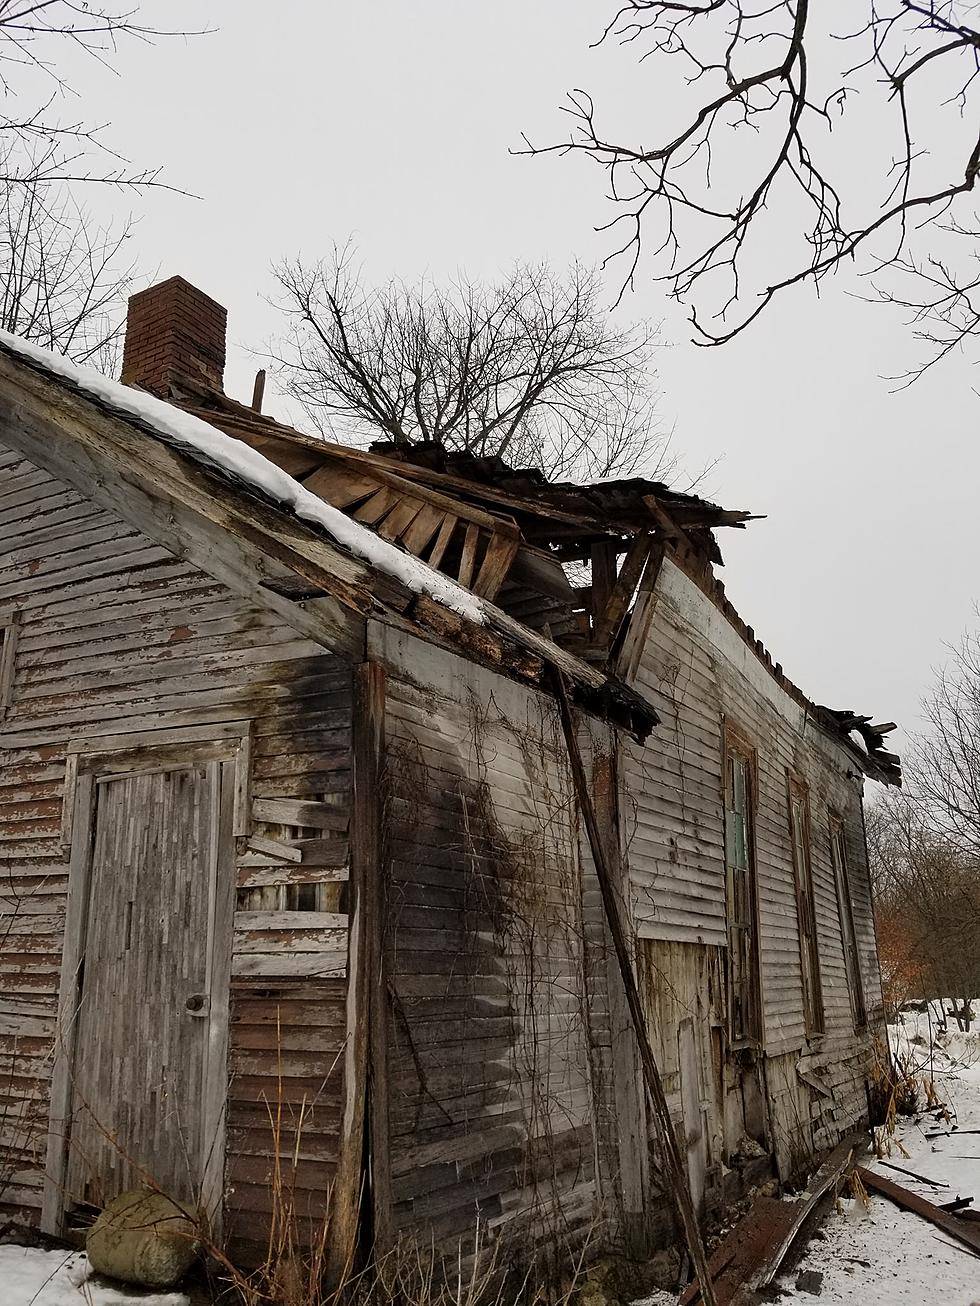 Historic 1880 One Room School House in Van Buren County Collapses Under Heavy Snow